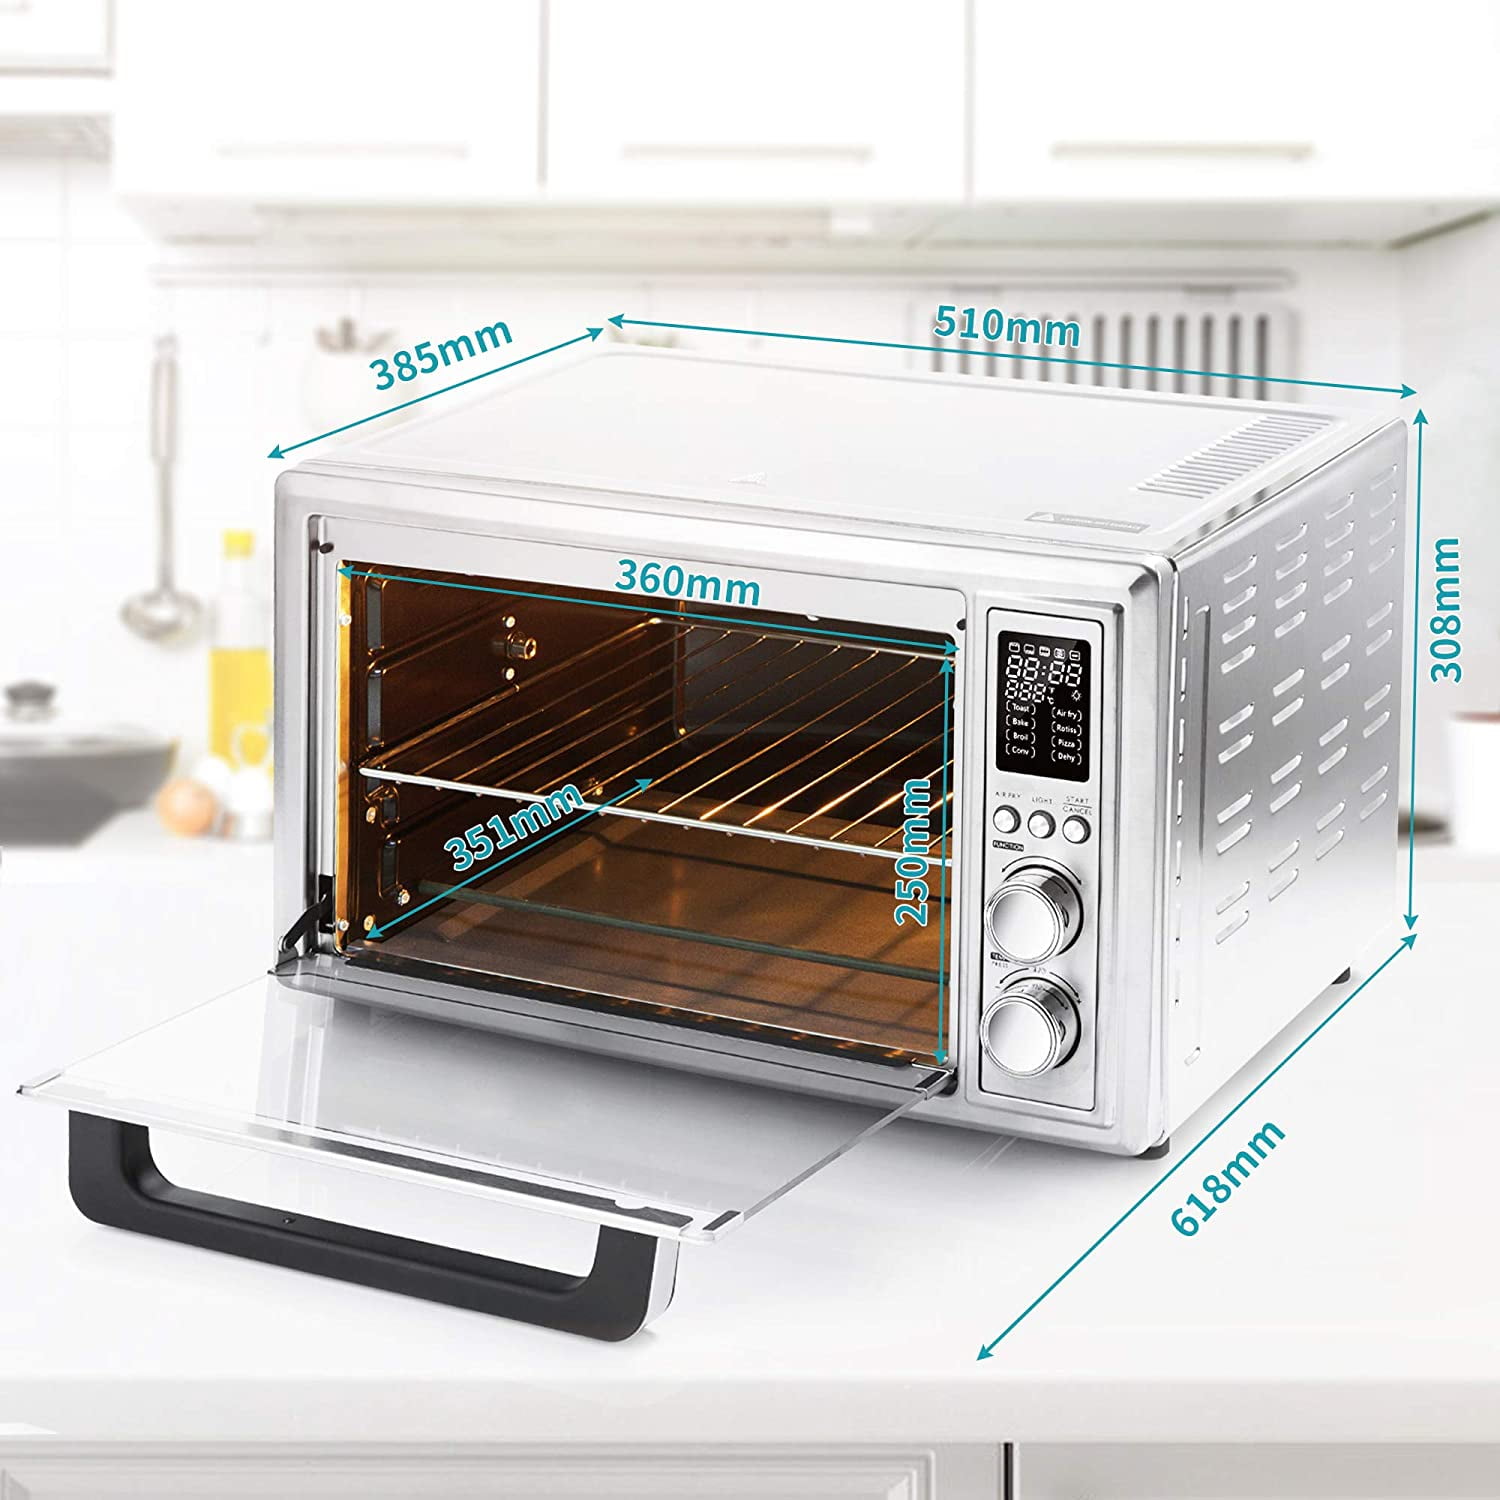 Ultrean AF30 32-Quart Air Fryer Toaster Oven Combo